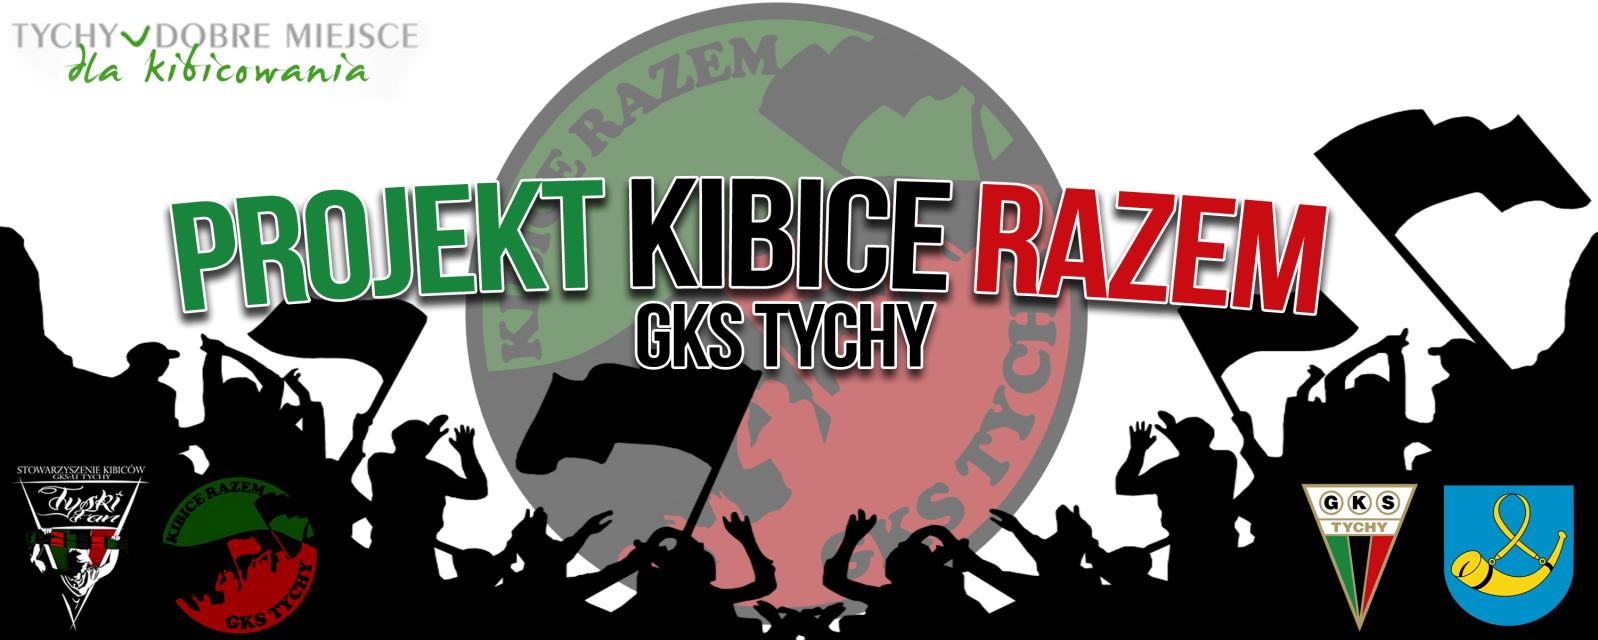 Witamy Wszystkich Kibiców GKS Tychy w szóstym, ostatnim w 2014 roku numerze TFM, numerze